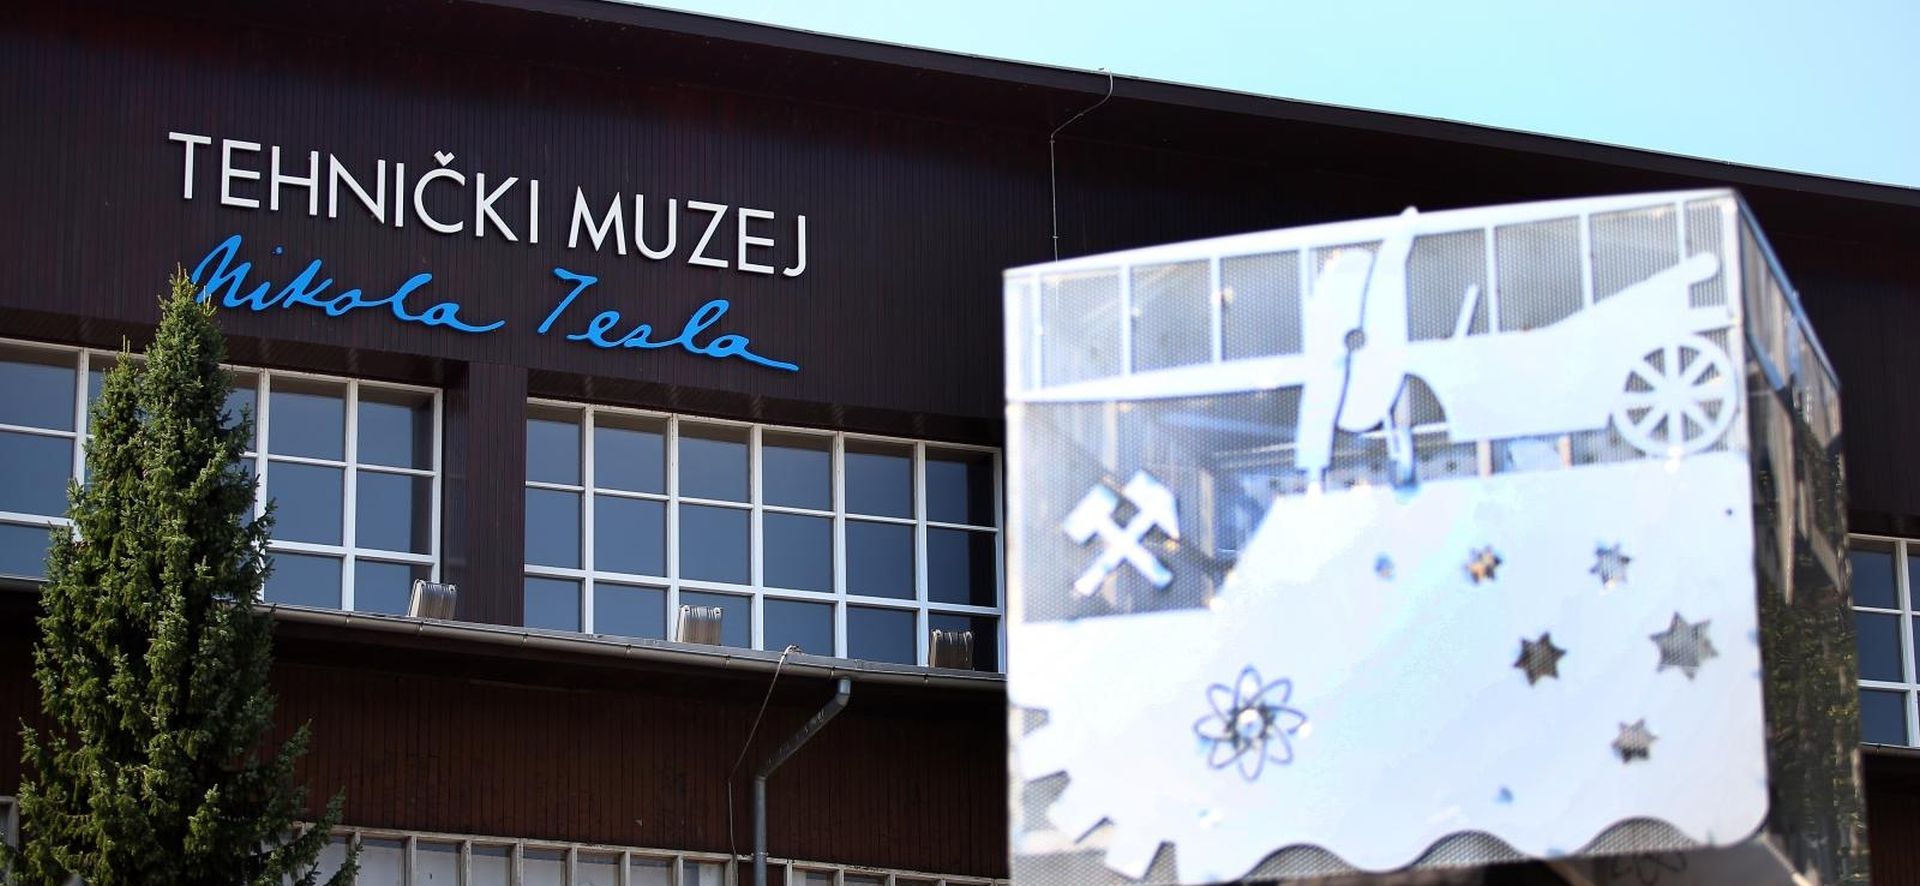 09.09.2016., Zagreb - Tehnicki muzej Nikola Tesla.
Photo: Slavko Midzor/PIXSELL